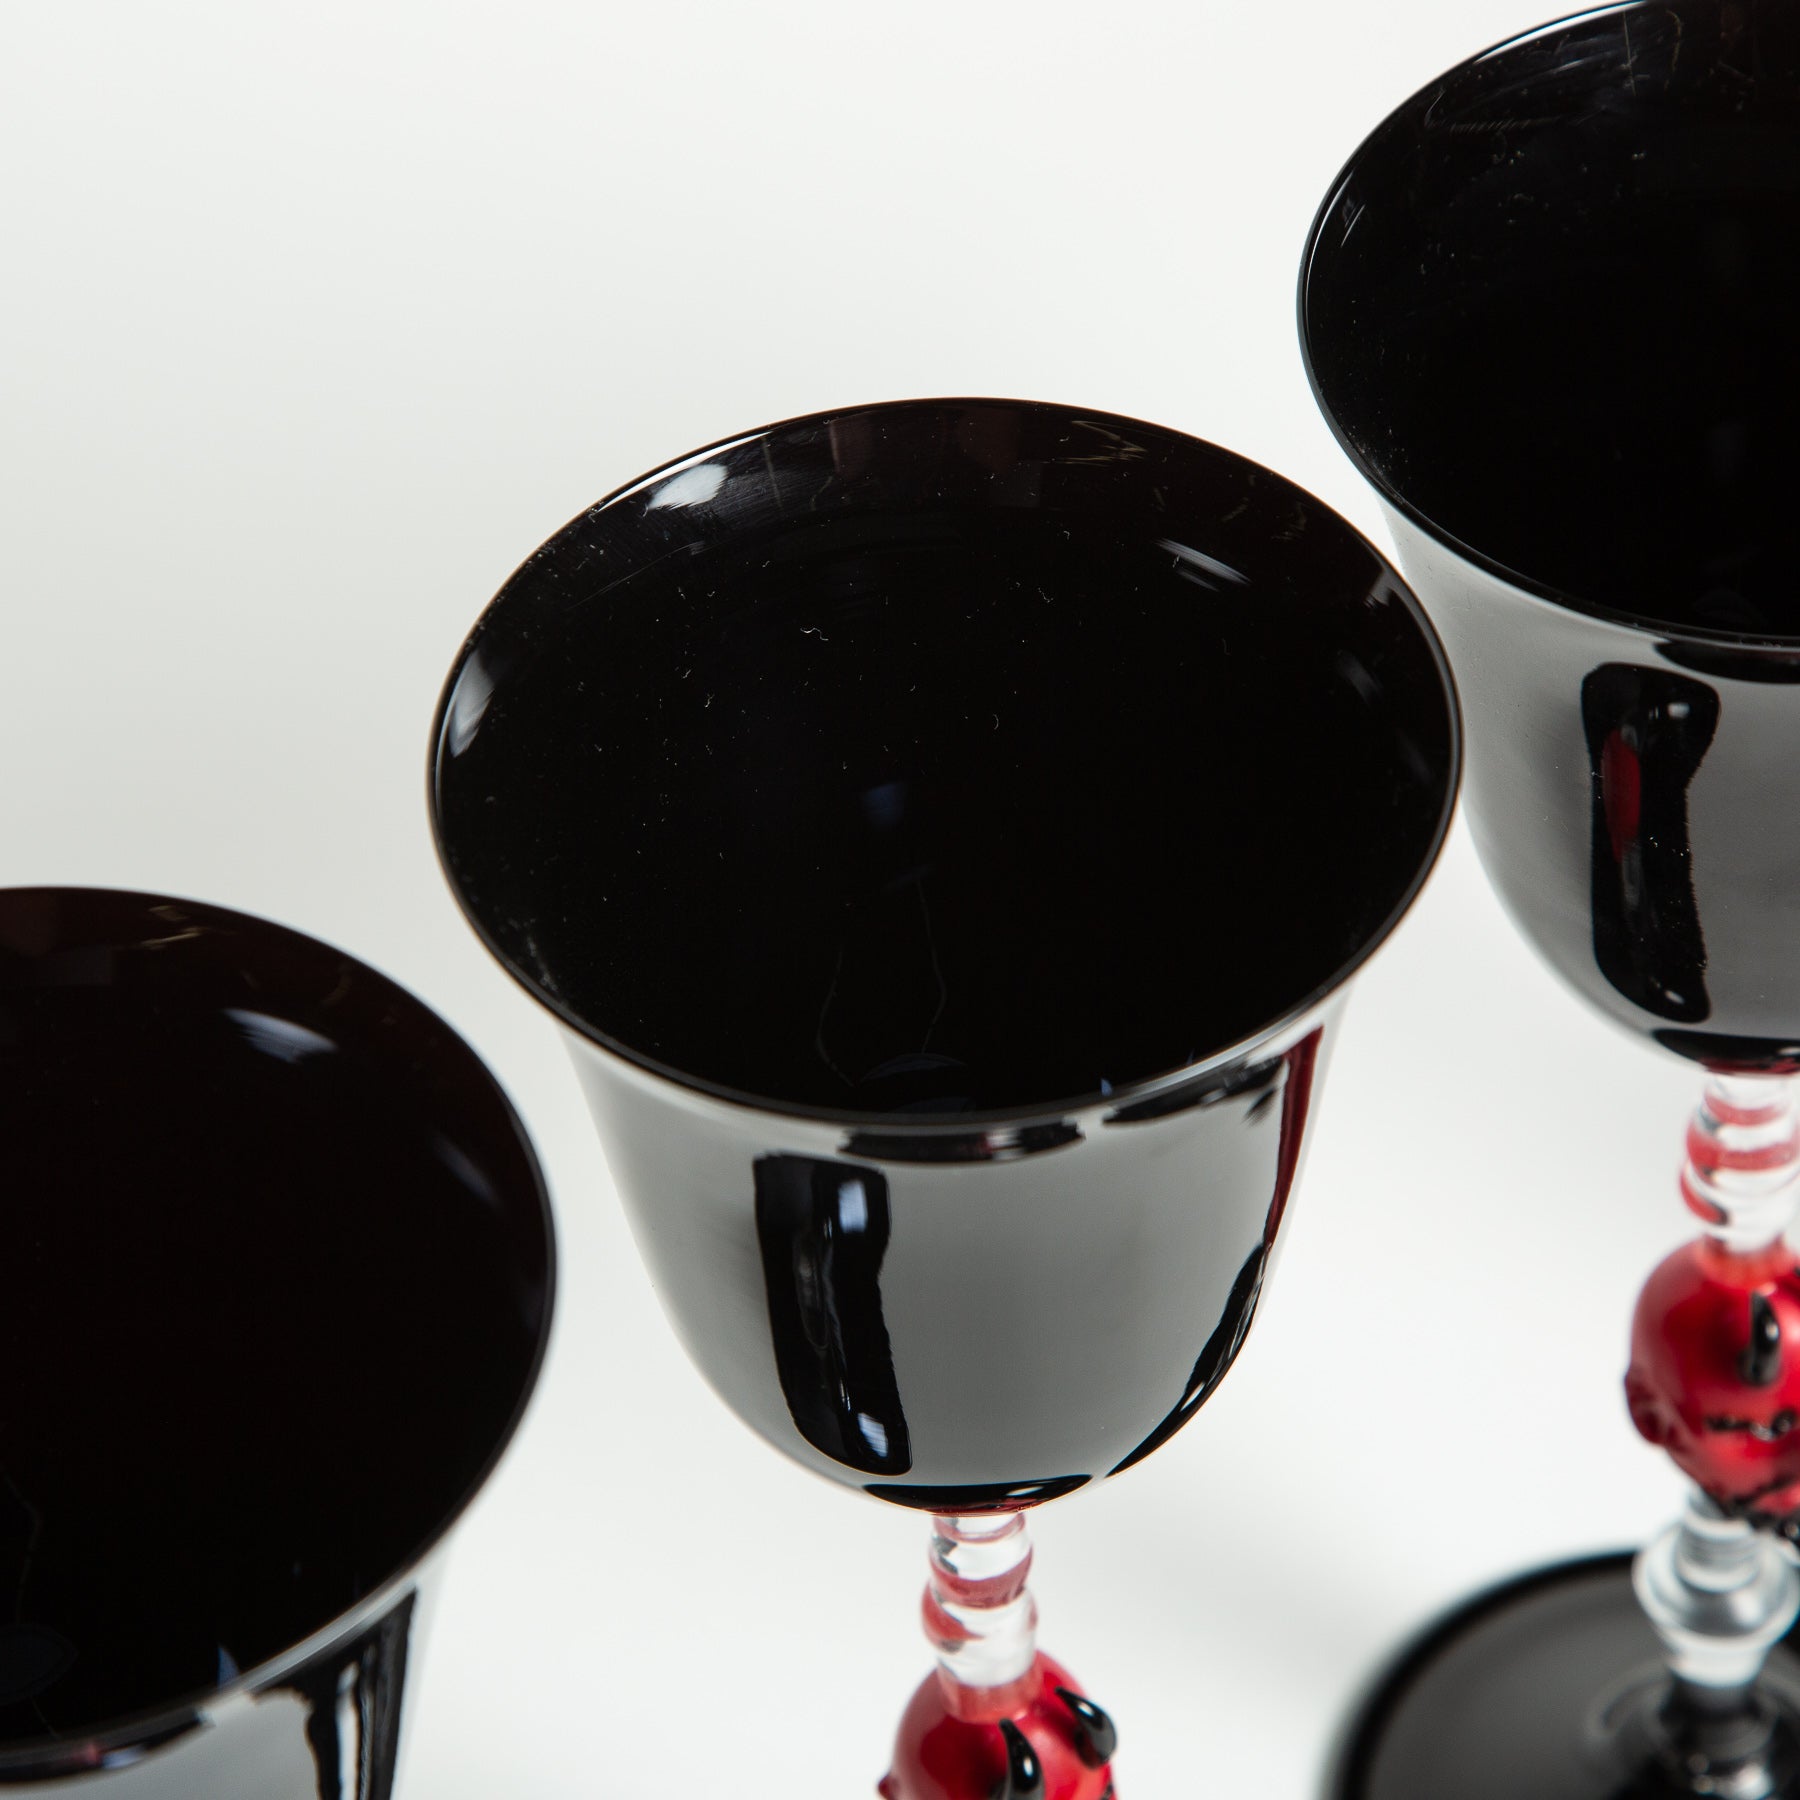 MAXFIELD PRIVATE COLLECTION | SET 4 DEVIL WINE GLASSES